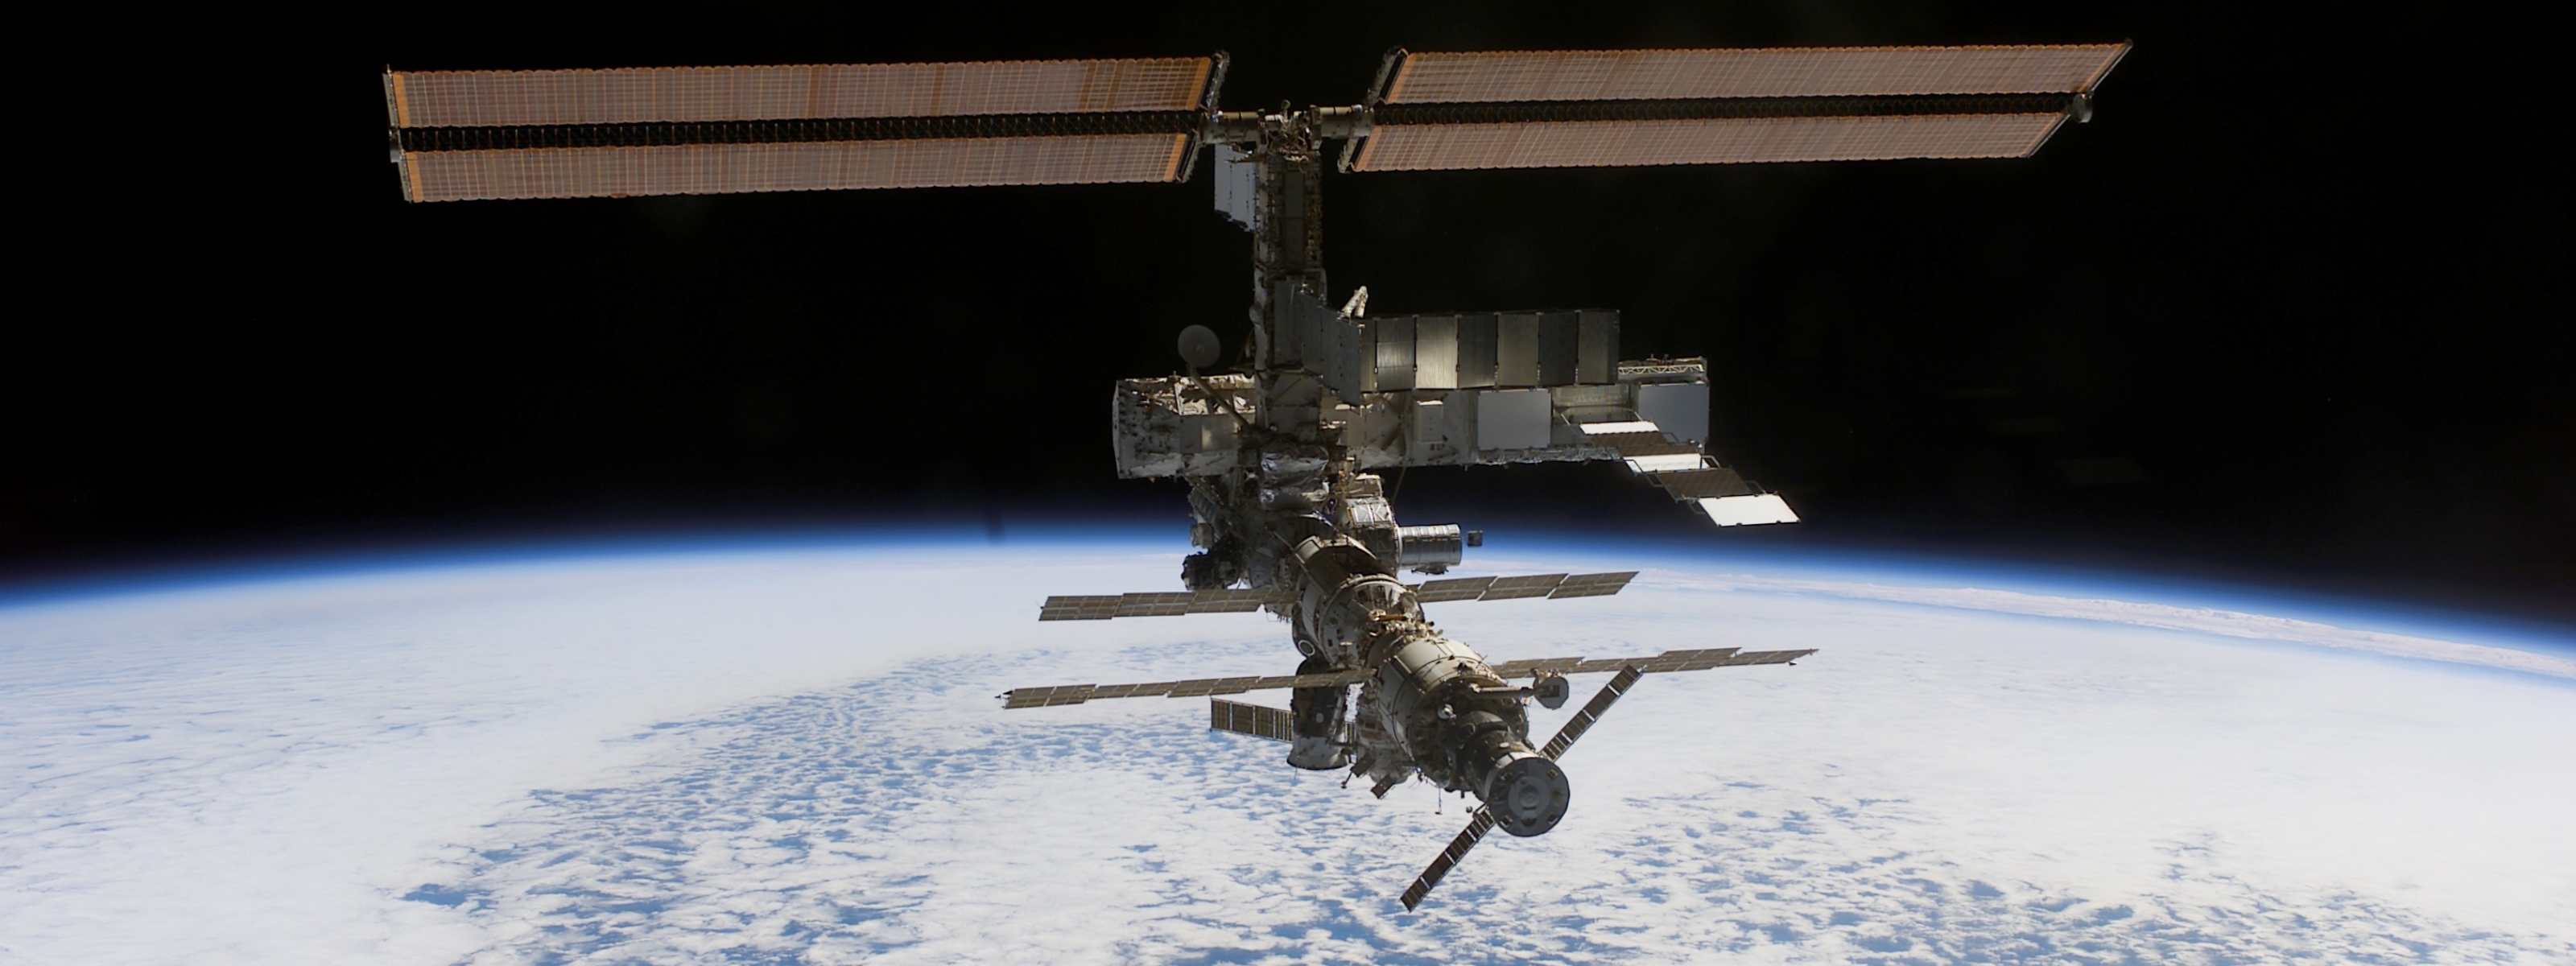 МКС, Международная космическая станция - обои на рабочий стол